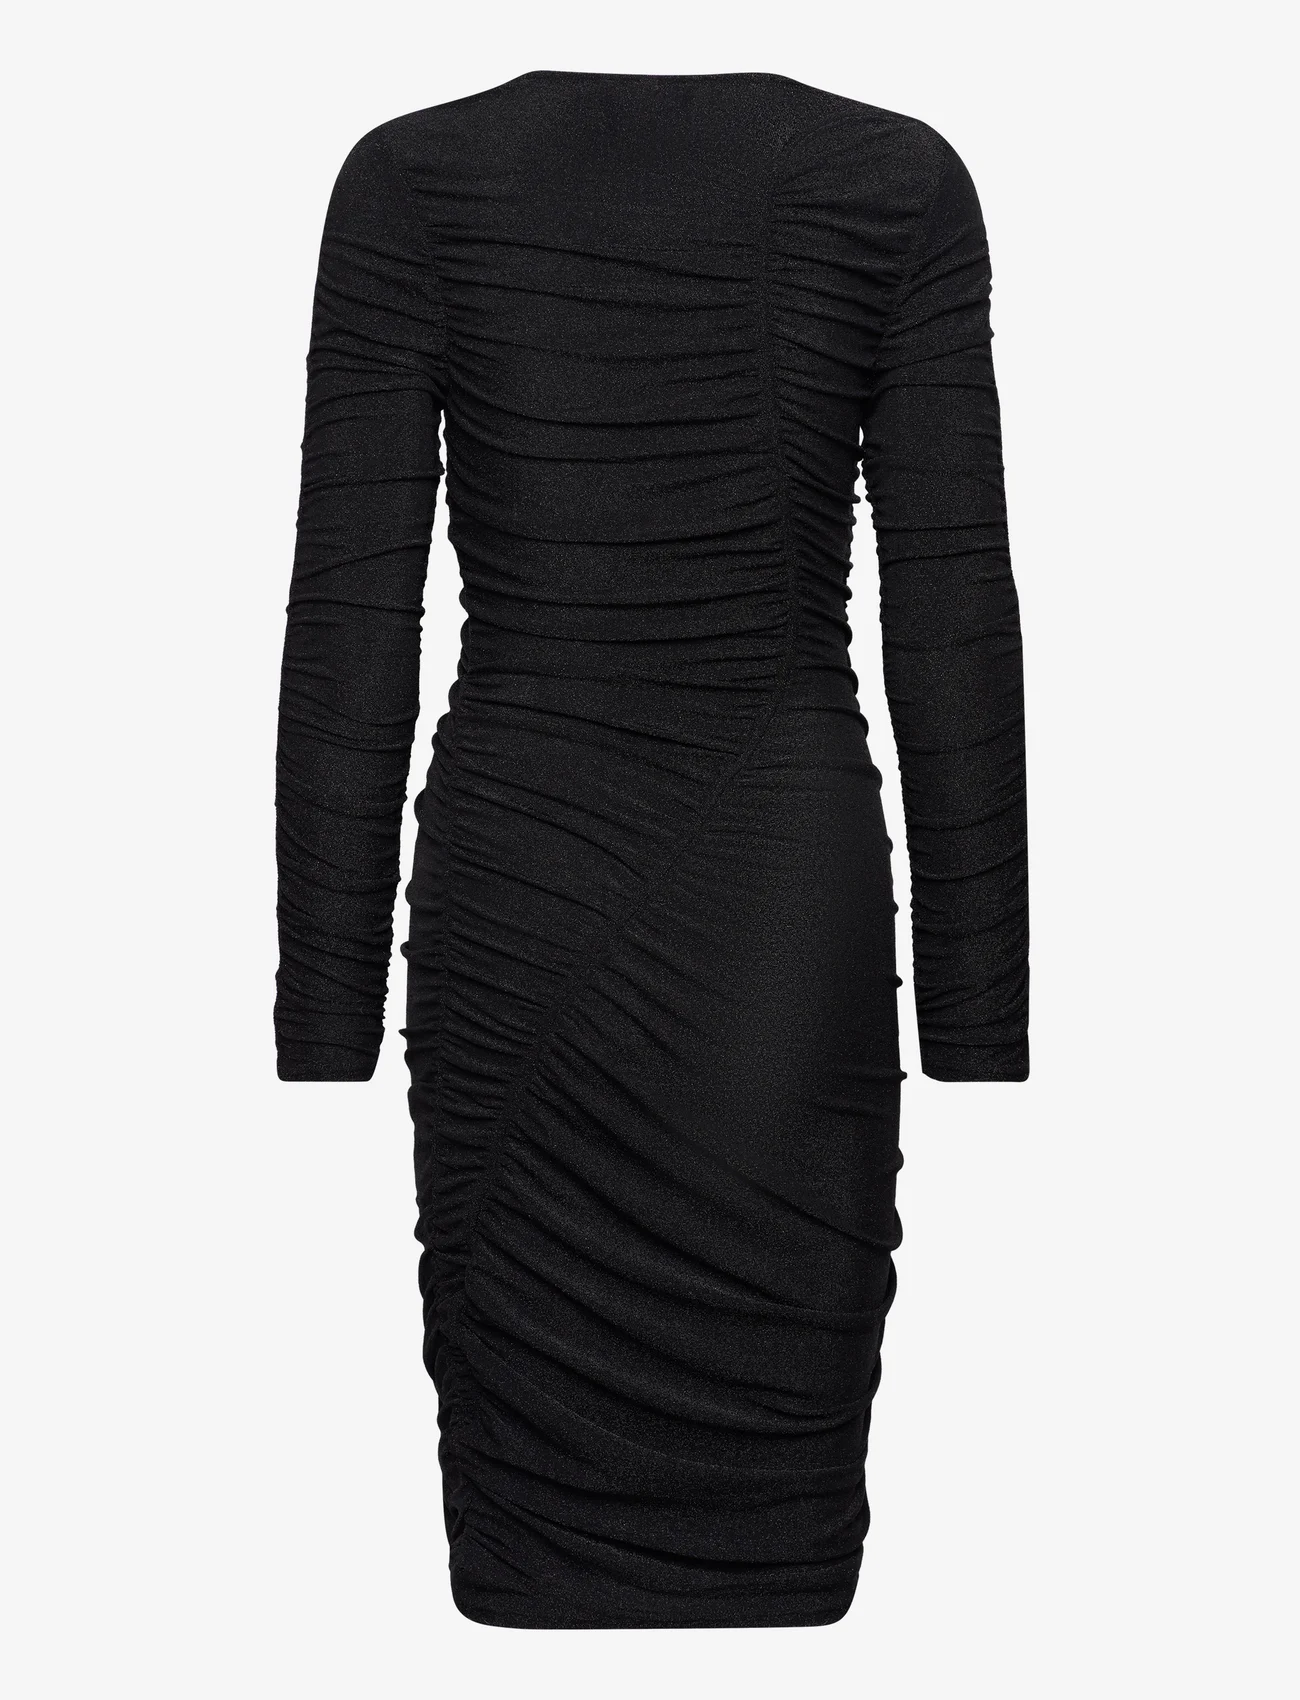 Cras - Charlottecras Dress - sukienki dopasowane - black - 1